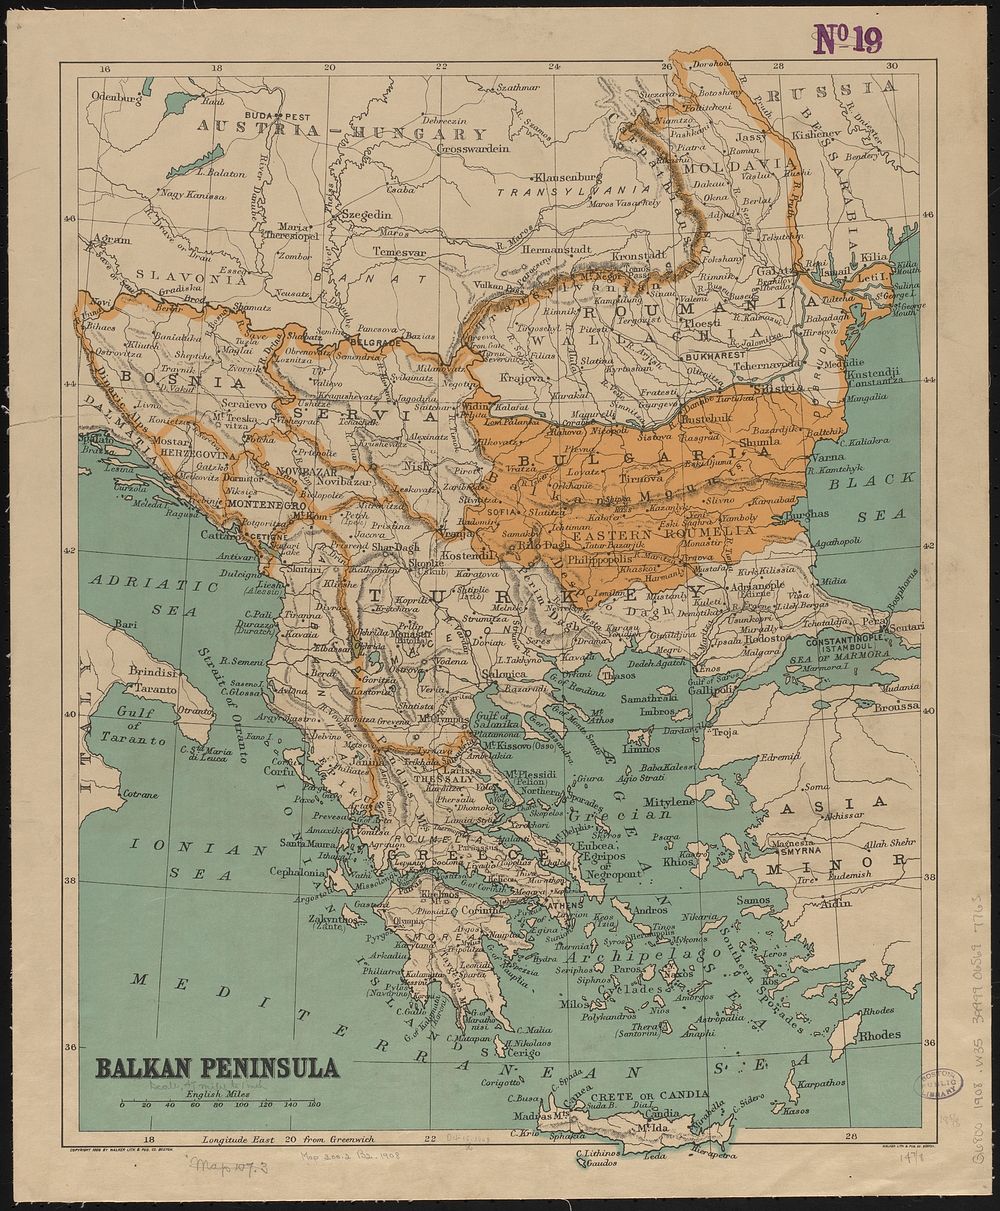             Balkan peninsula          